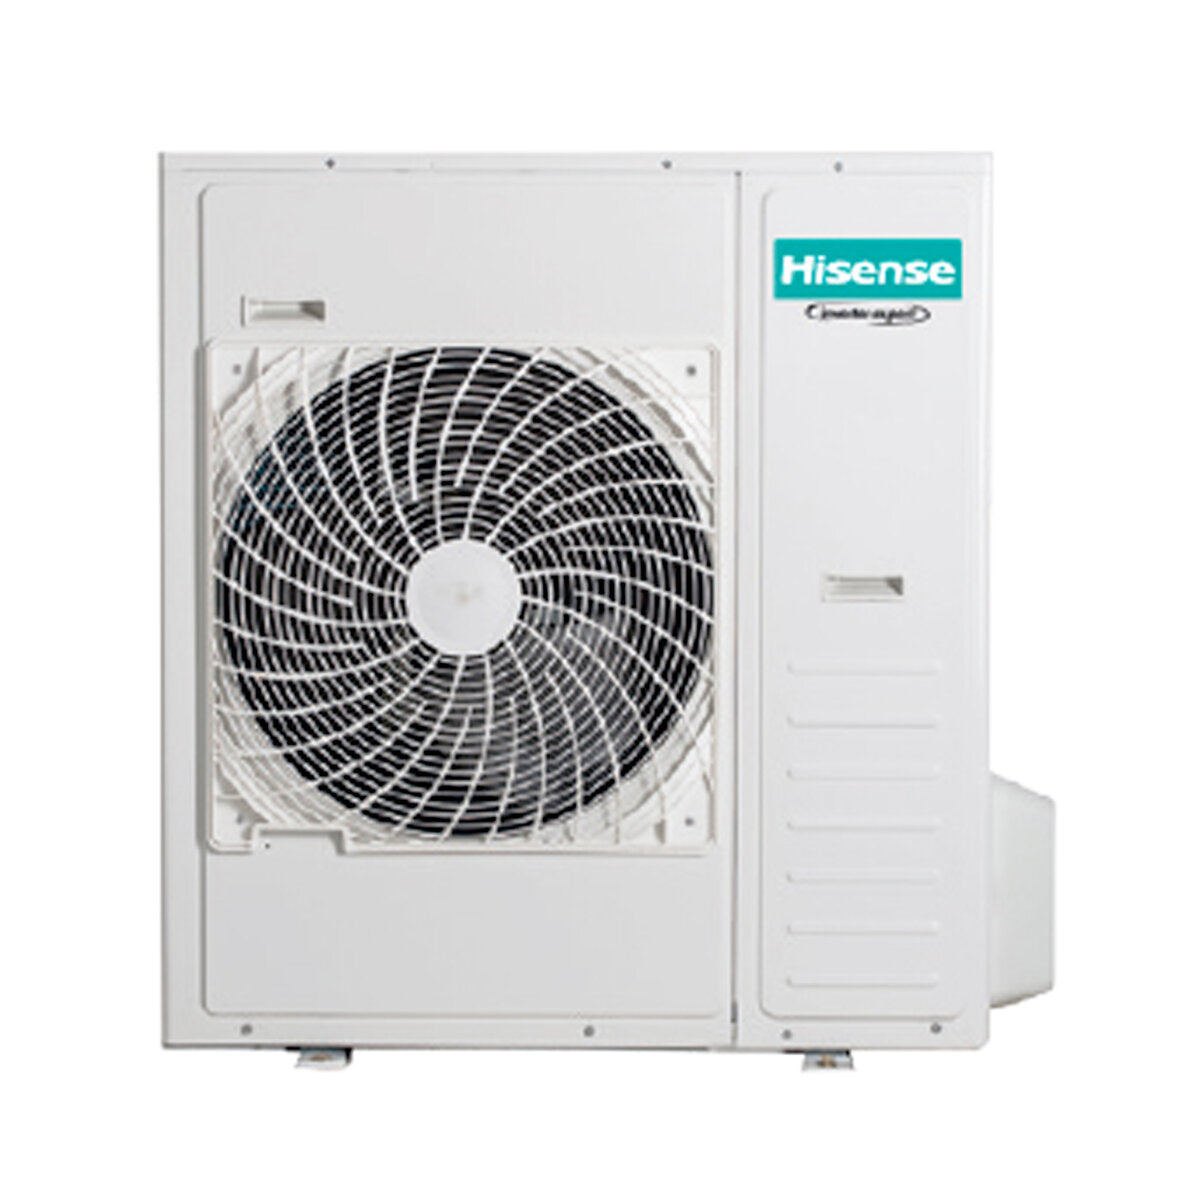 Hisense Hi-Comfort climatiseur split quadri 7000 + 7000 + 12000 + 24000 BTU wifi inverter unité extérieure 12,5 kW